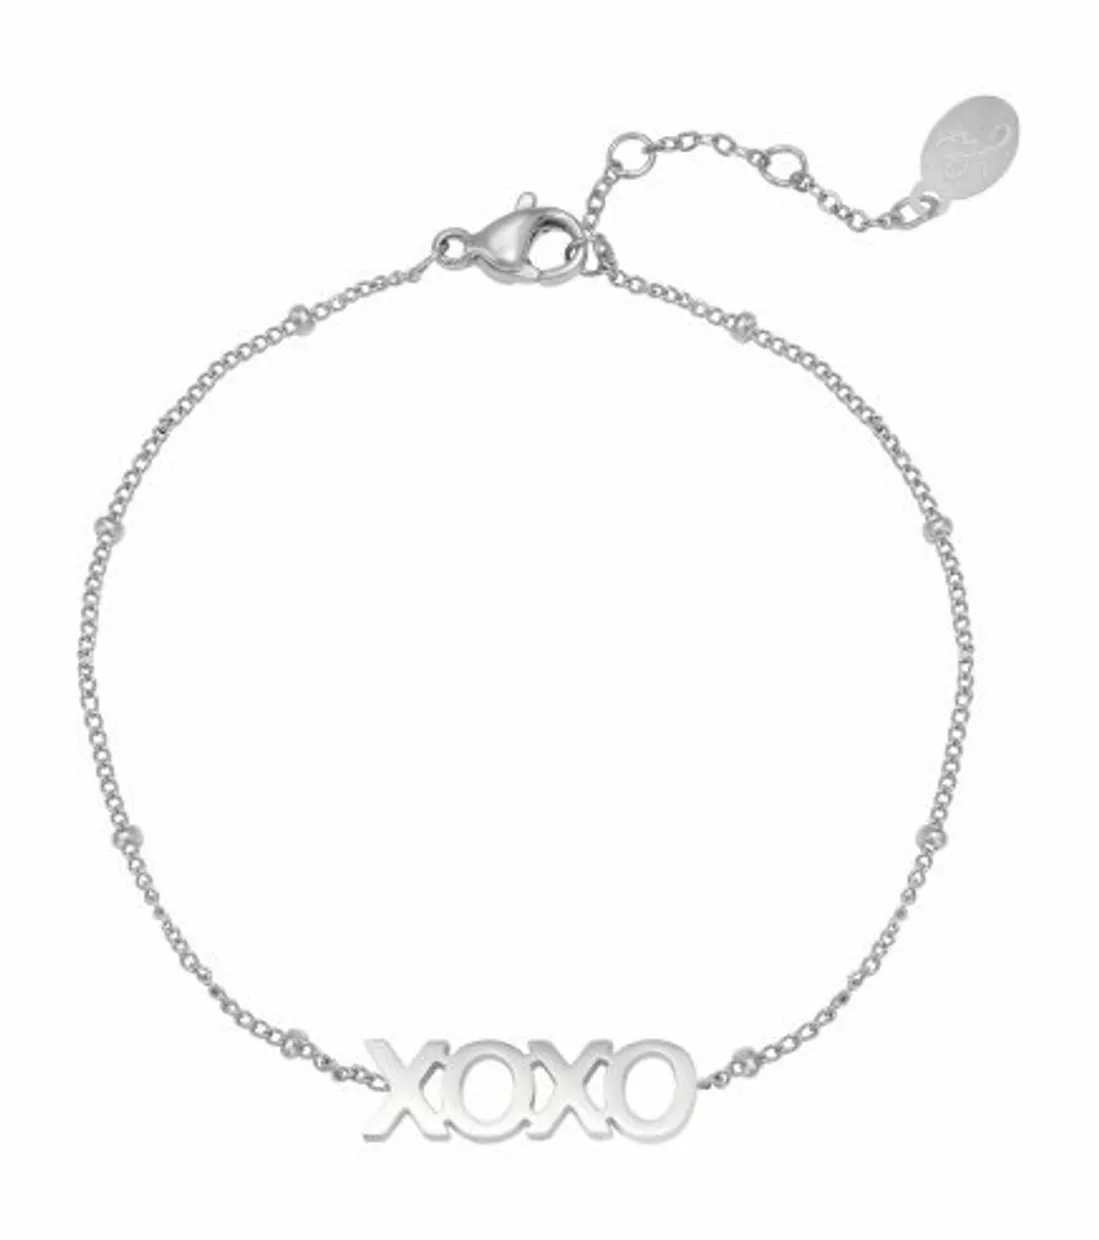 Bracelet dotted XOXO silver